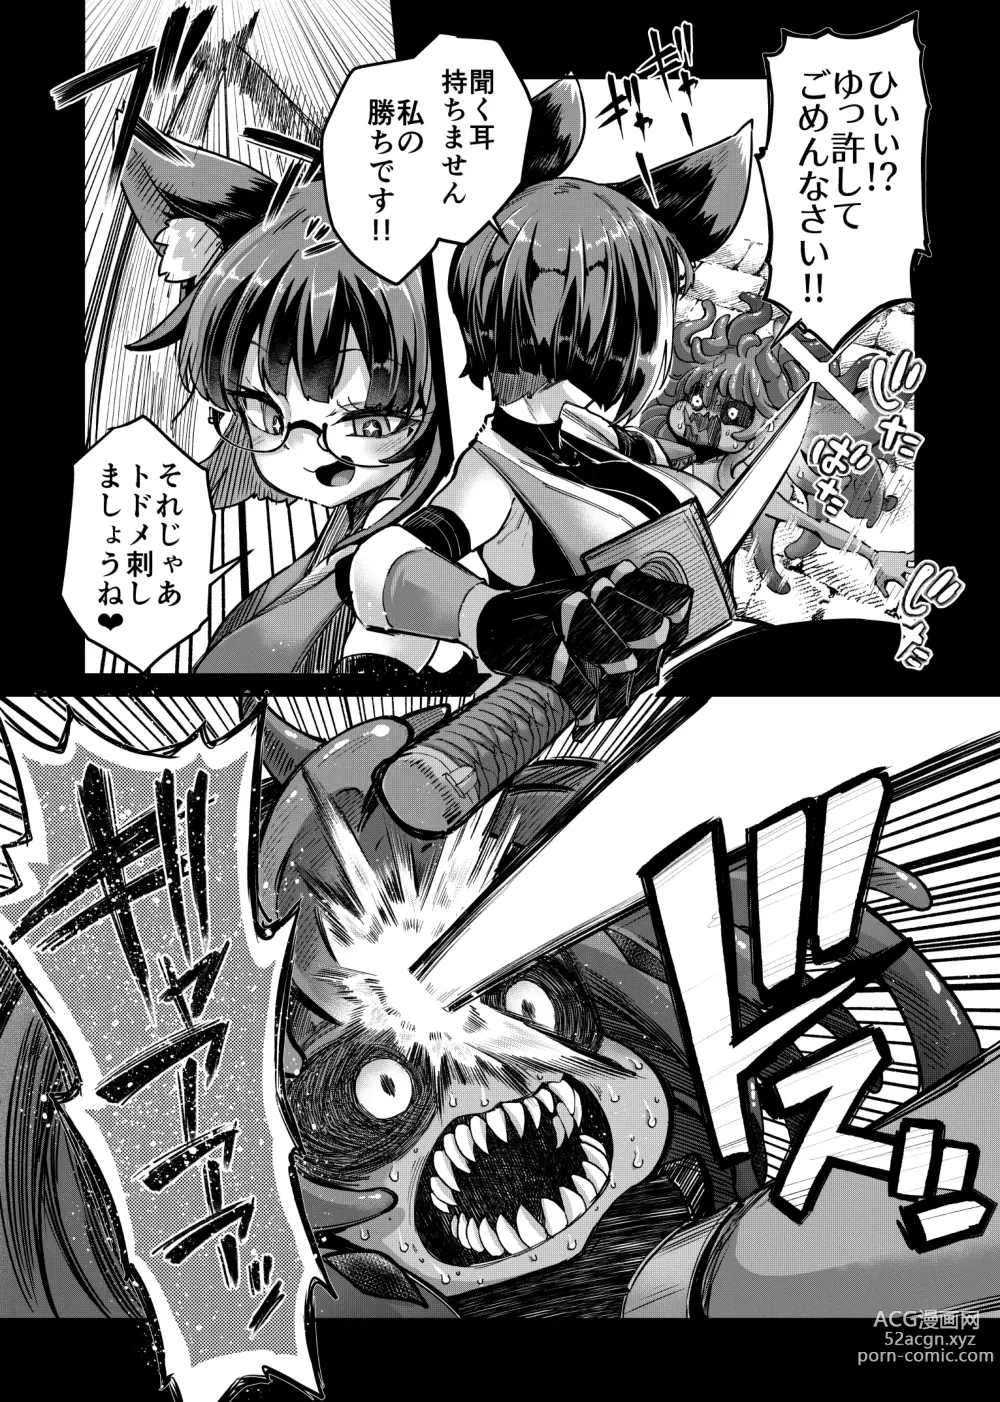 Page 14 of doujinshi Rizinetta VS jishin dungeon 2